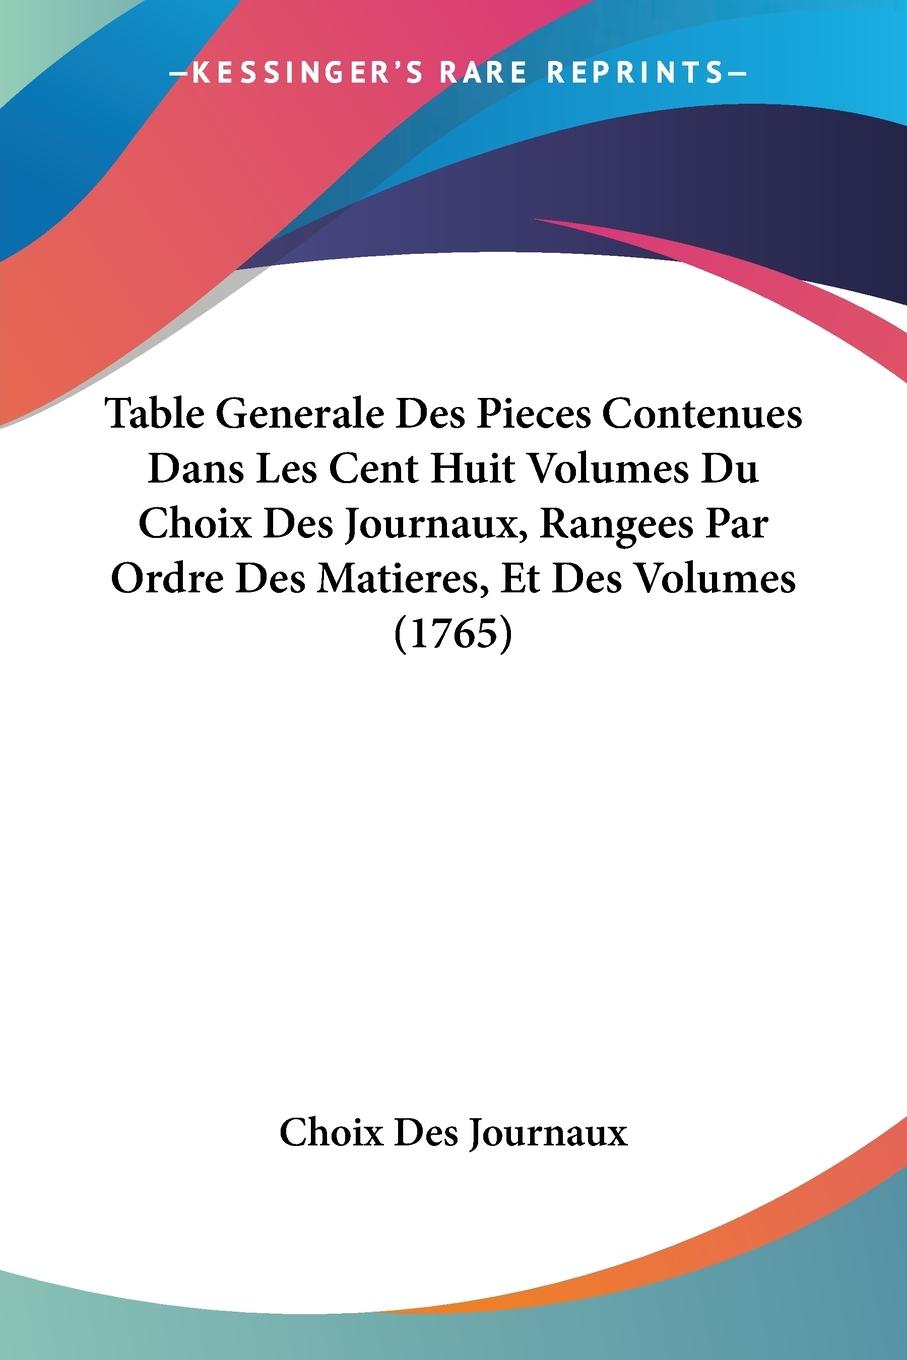 Table Generale Des Pieces Contenues Dans Les Cent Huit Volumes Du Choix Des Journaux, Rangees Par Ordre Des Matieres, Et Des Volumes (1765)